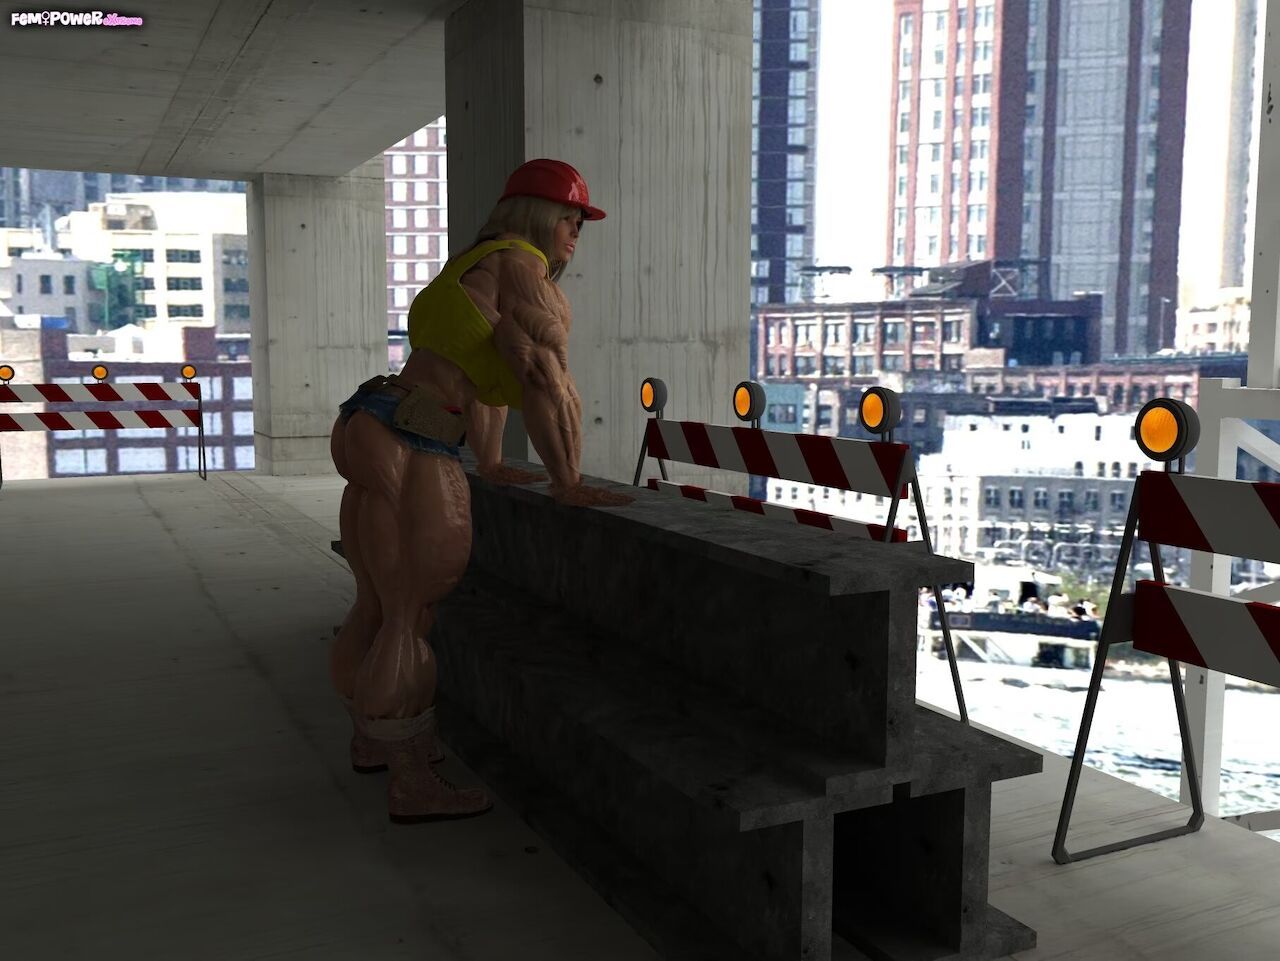 [FemPowerExtreme] Construction Worker Lisa 2